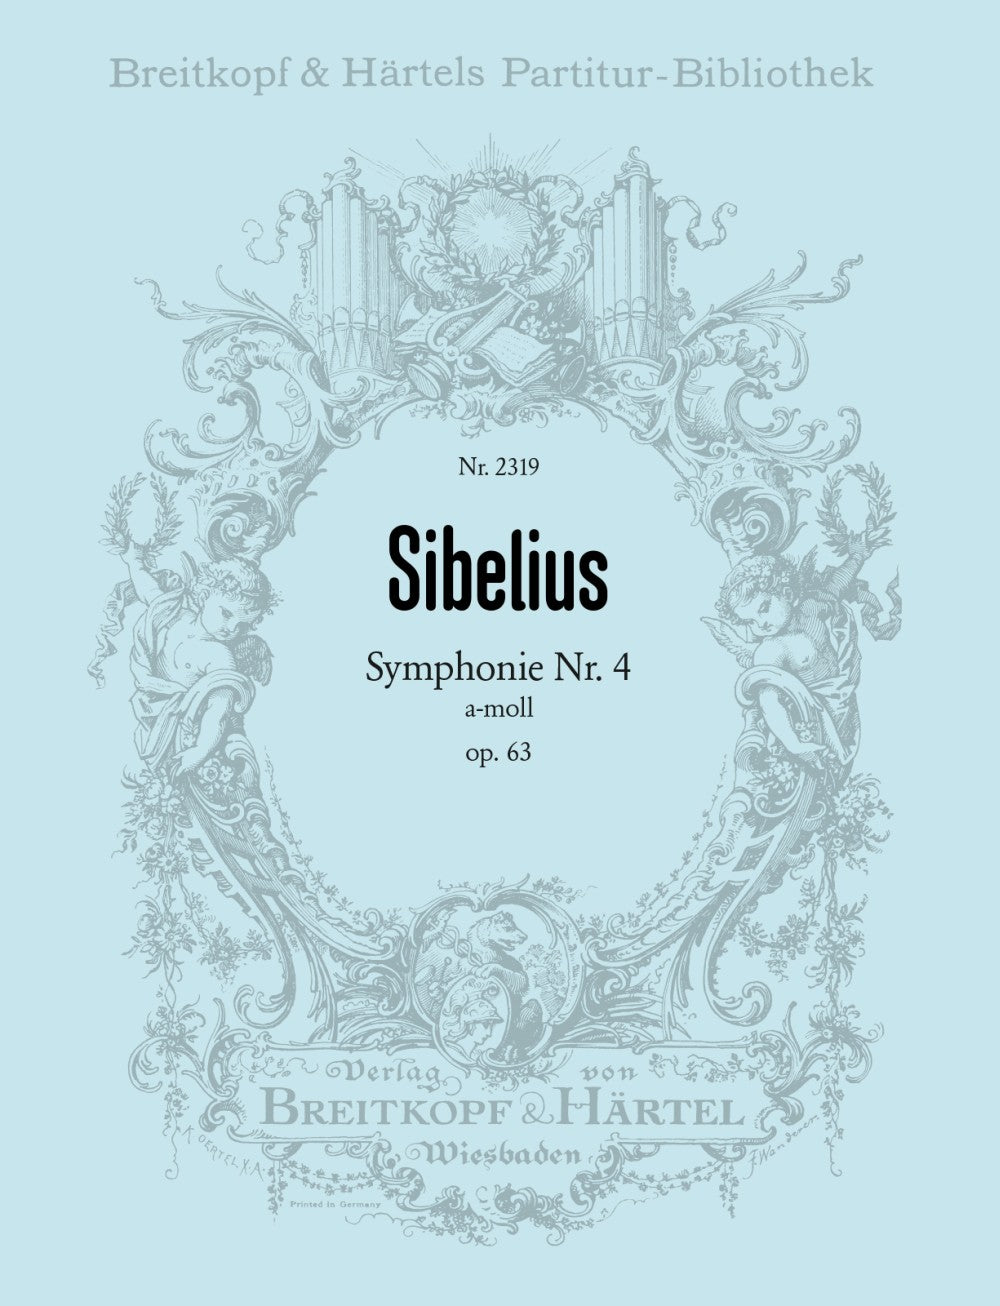 Sibelius Symphony No 4 A minor op 63 Full Score